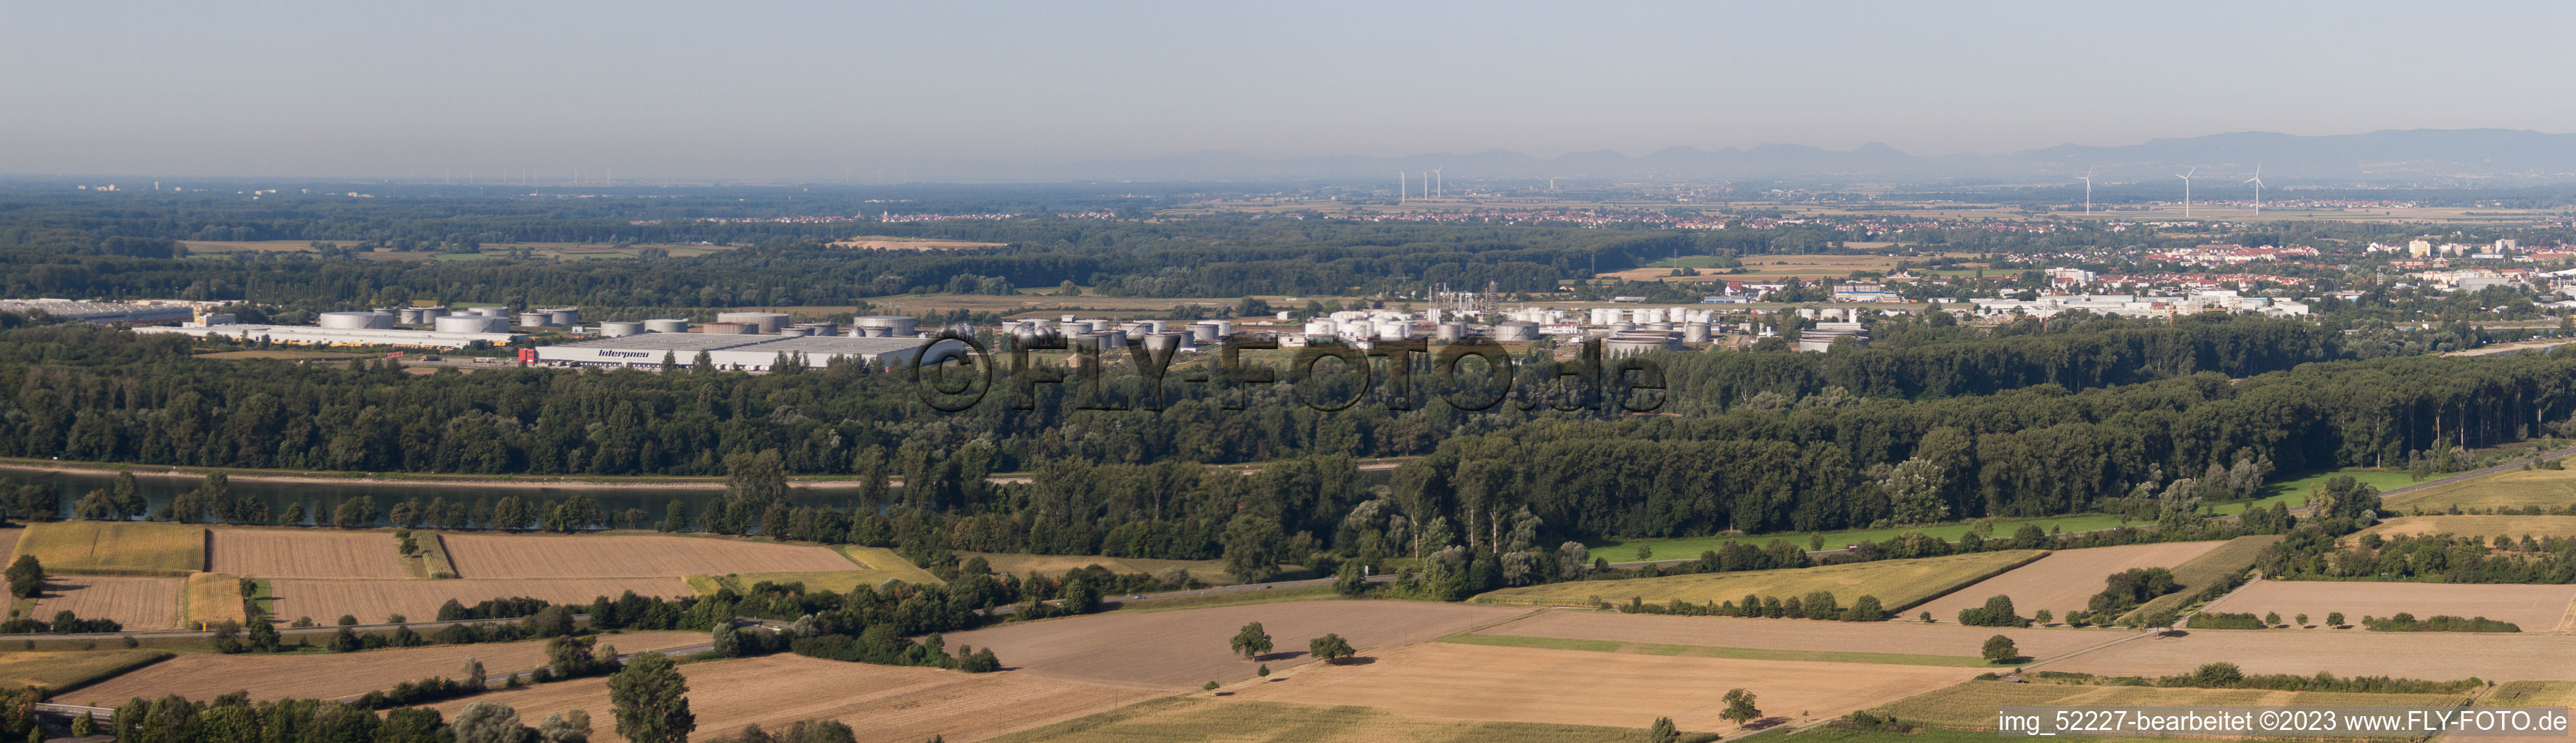 Vue aérienne de Panorama de la zone industrielle sud à Speyer dans le département Rhénanie-Palatinat, Allemagne